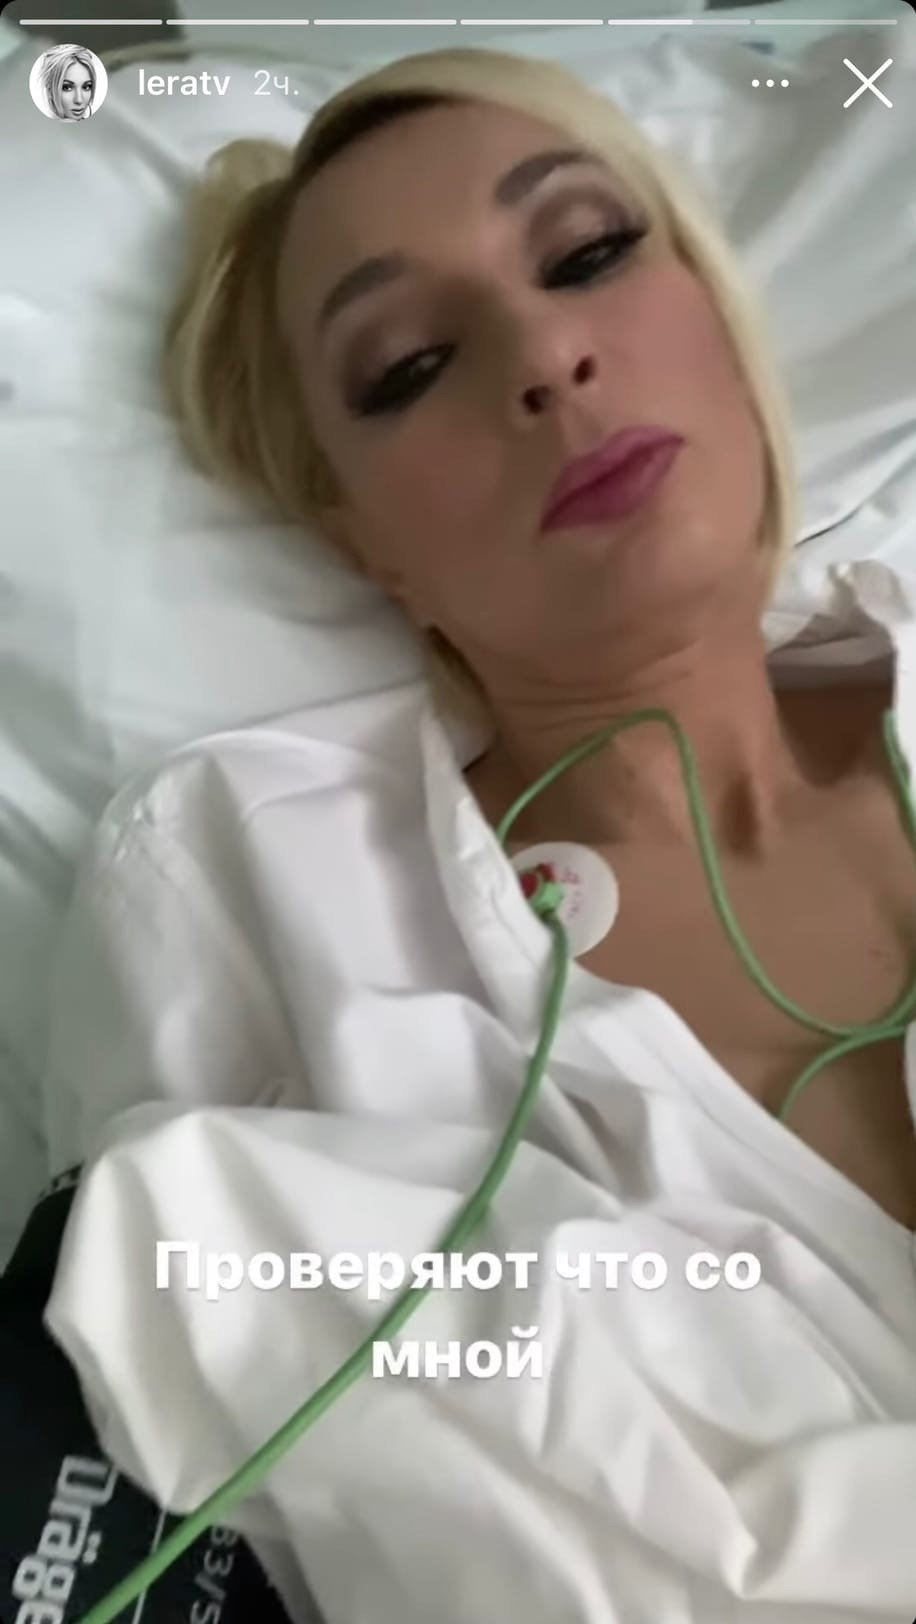 Лера Кудрявцева госпитализирована